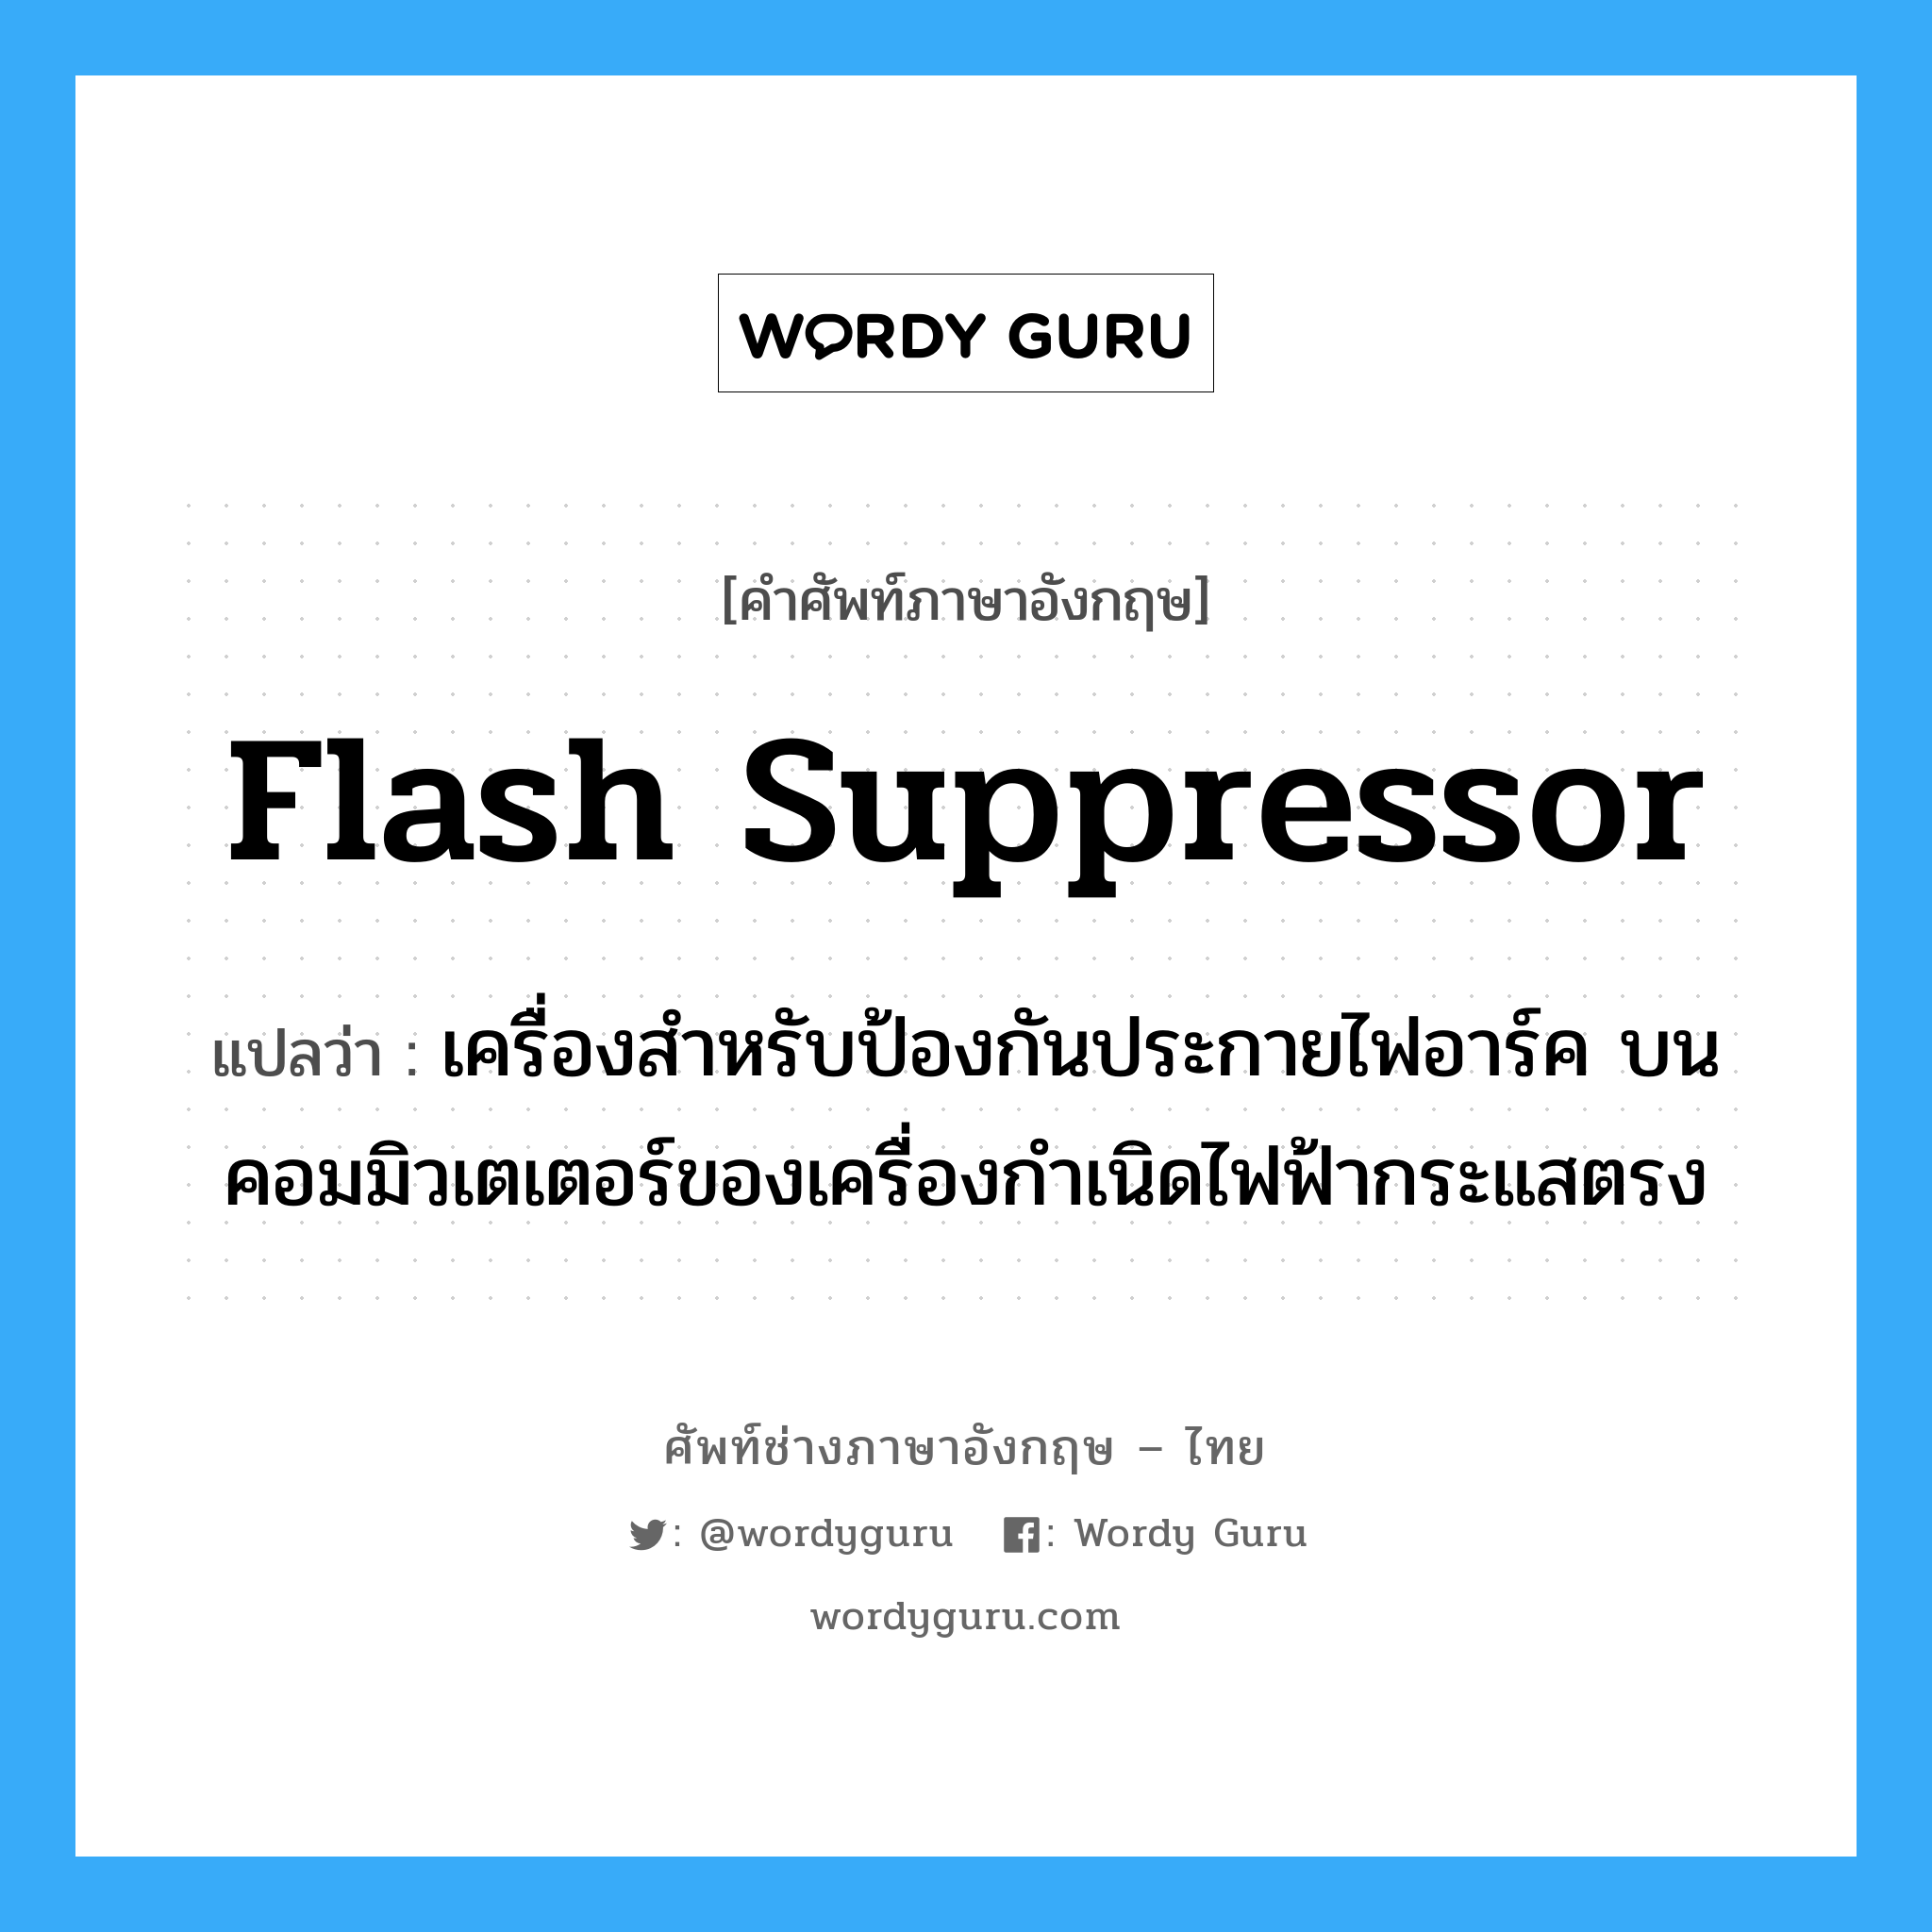 flash suppressor แปลว่า?, คำศัพท์ช่างภาษาอังกฤษ - ไทย flash suppressor คำศัพท์ภาษาอังกฤษ flash suppressor แปลว่า เครื่องสำหรับป้องกันประกายไฟอาร์ค บนคอมมิวเตเตอร์ของเครื่องกำเนิดไฟฟ้ากระแสตรง